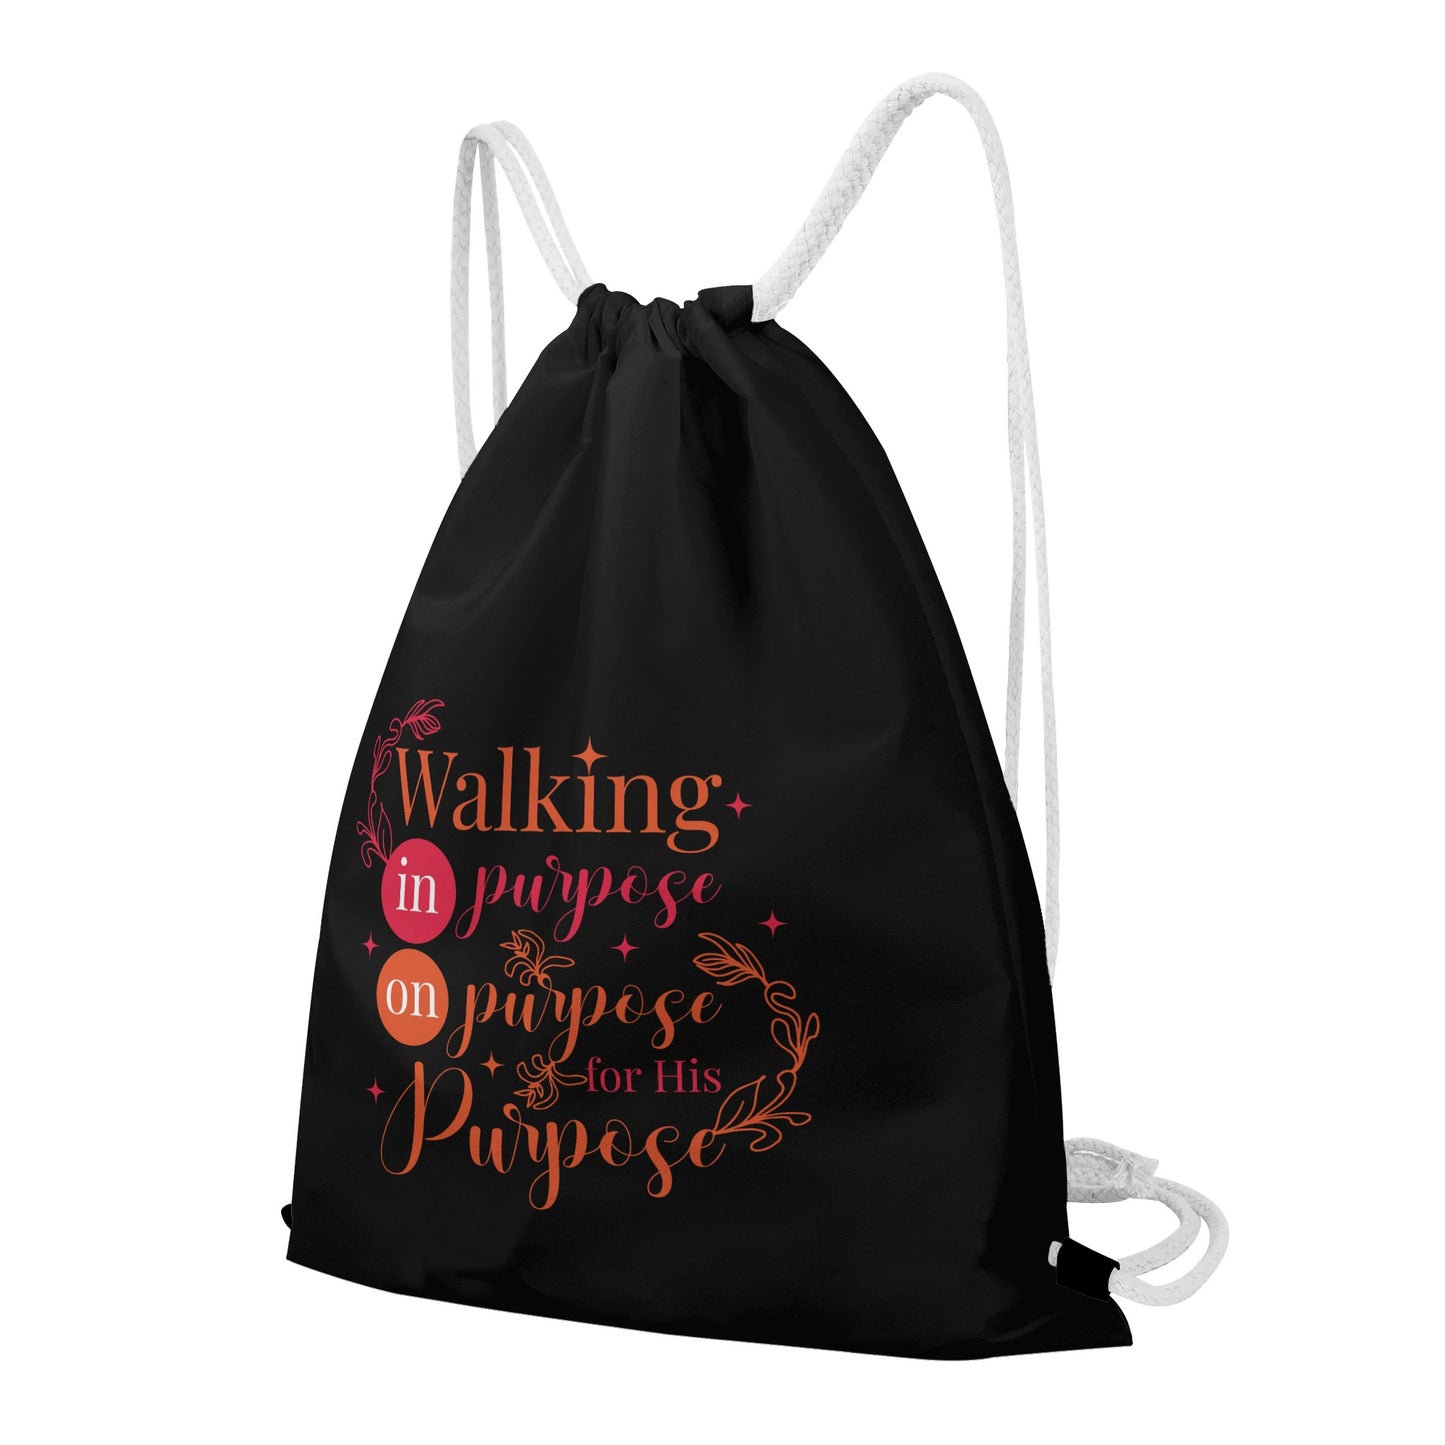 Walking On Purpose In Purpose For His Purpose Gym Drawstring Bag popcustoms